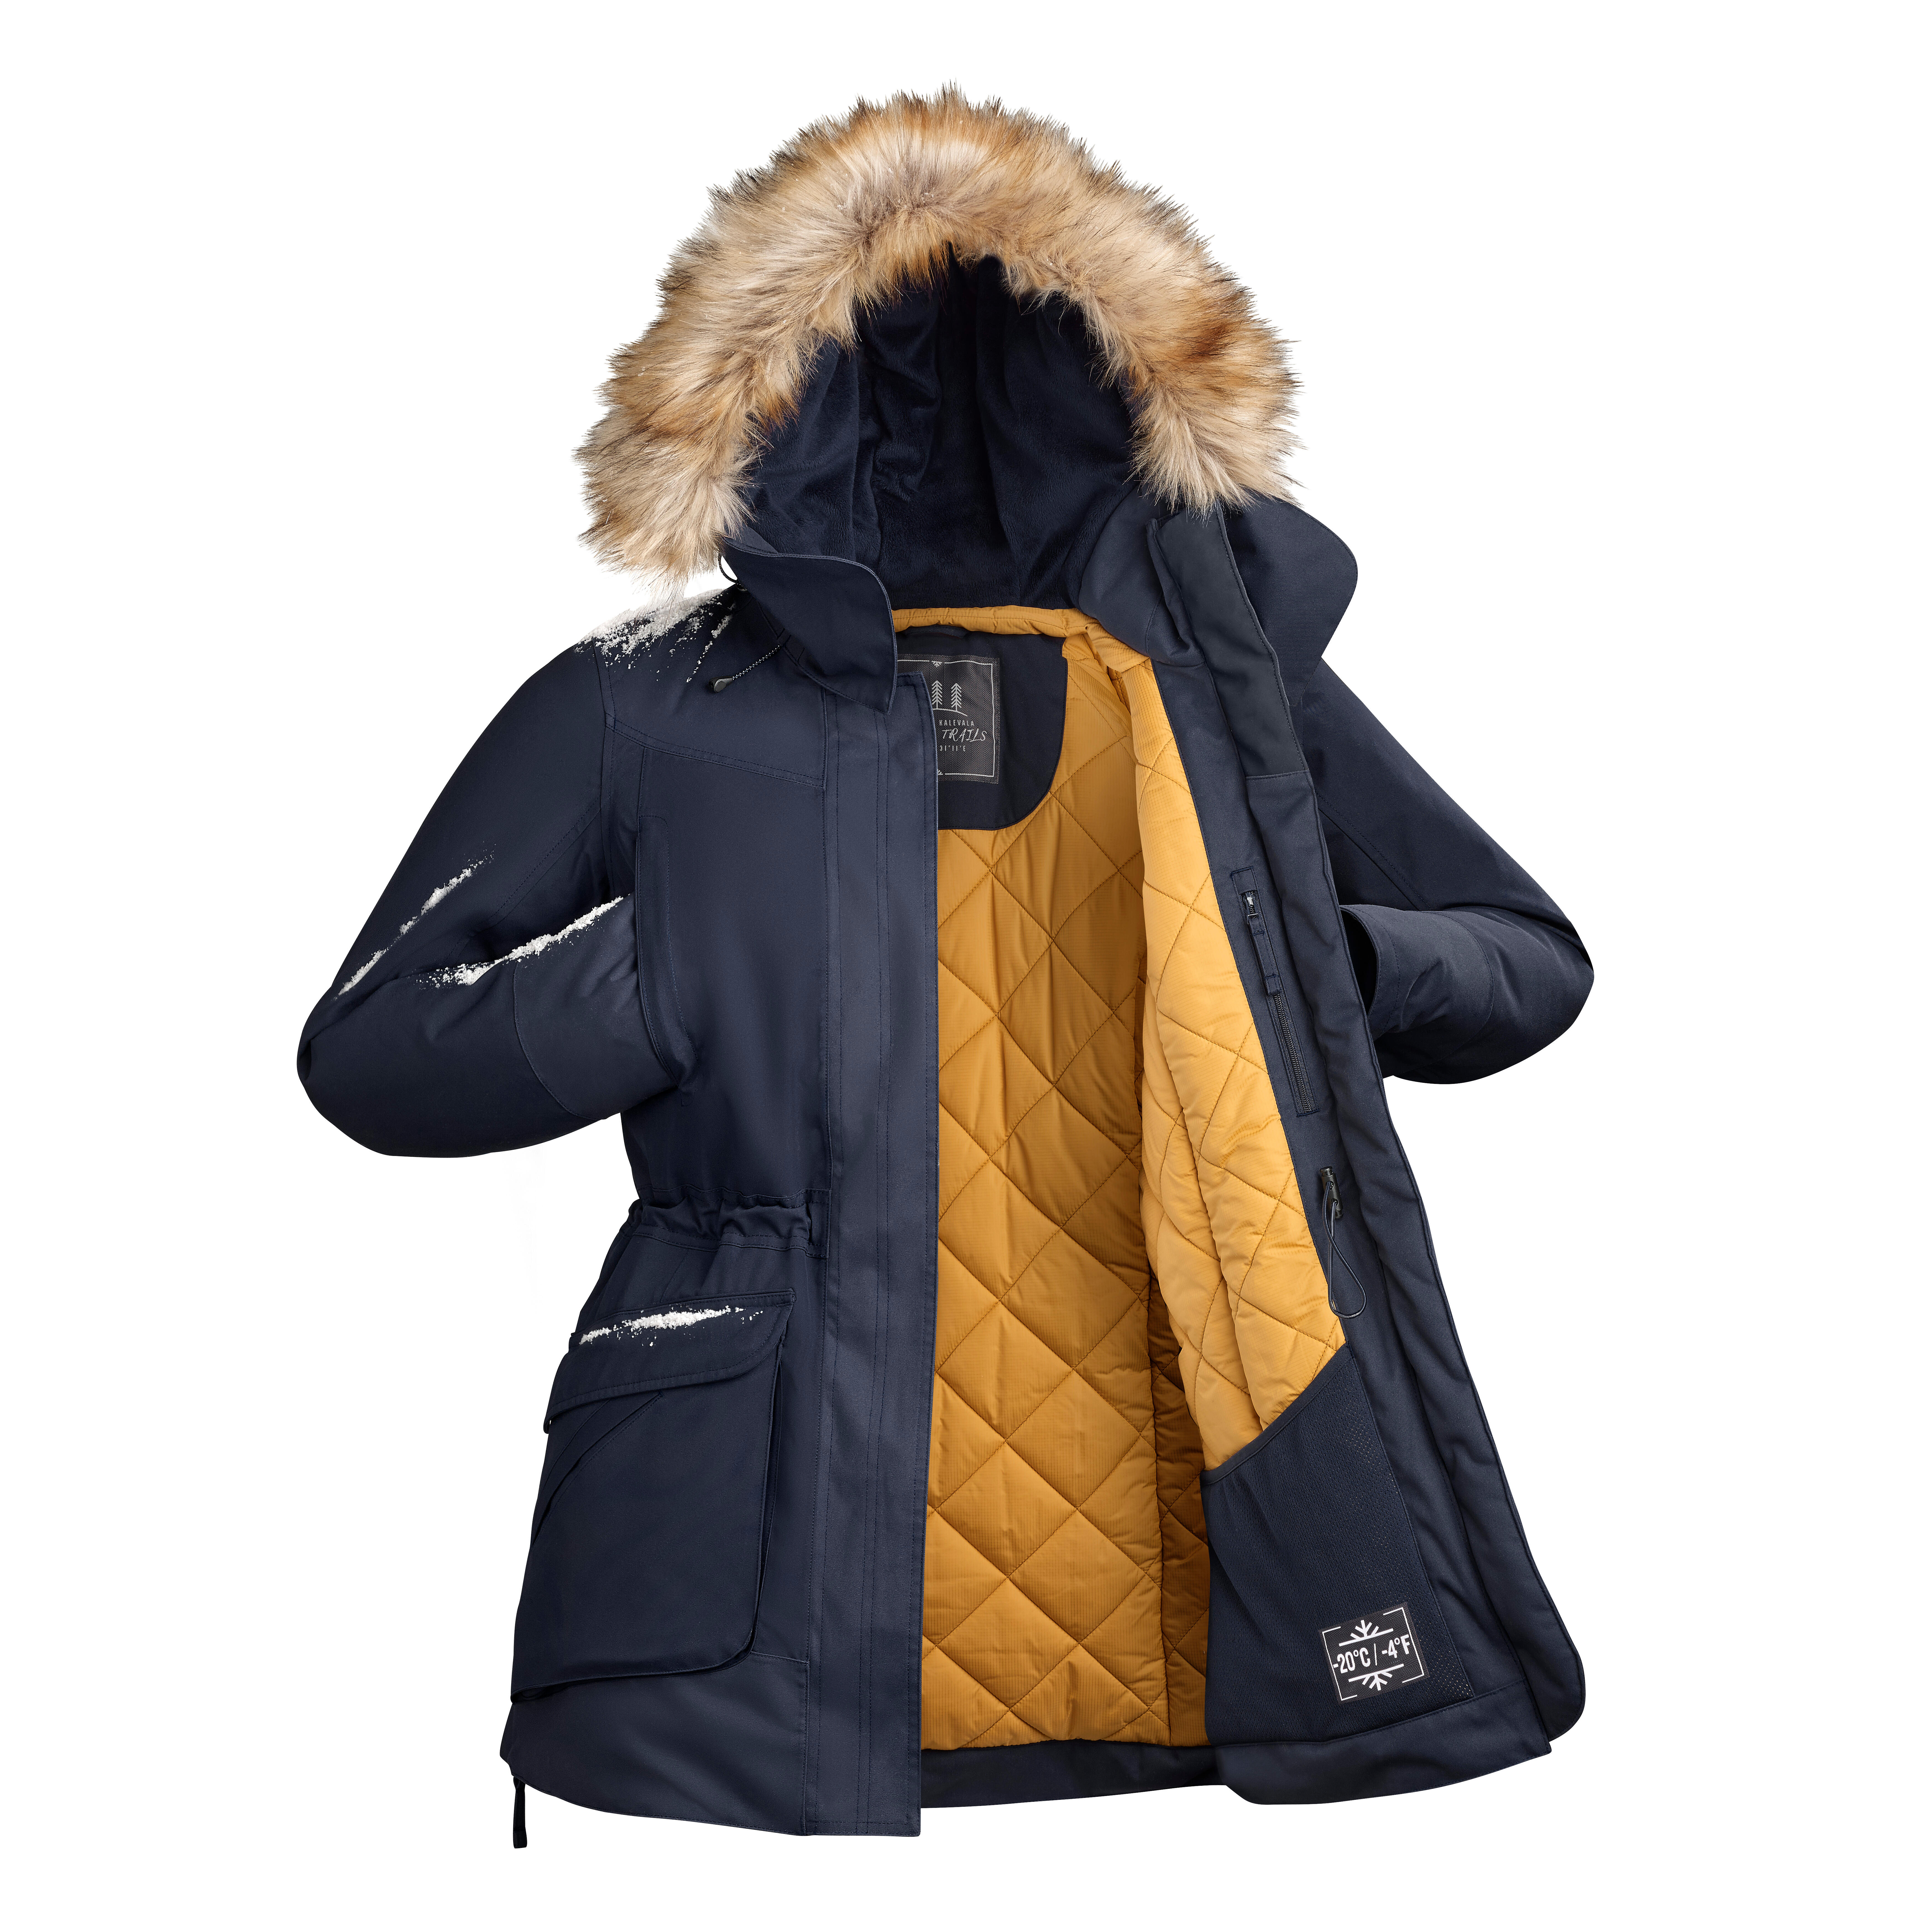 Women’s Winter Jacket - SH 500 Black